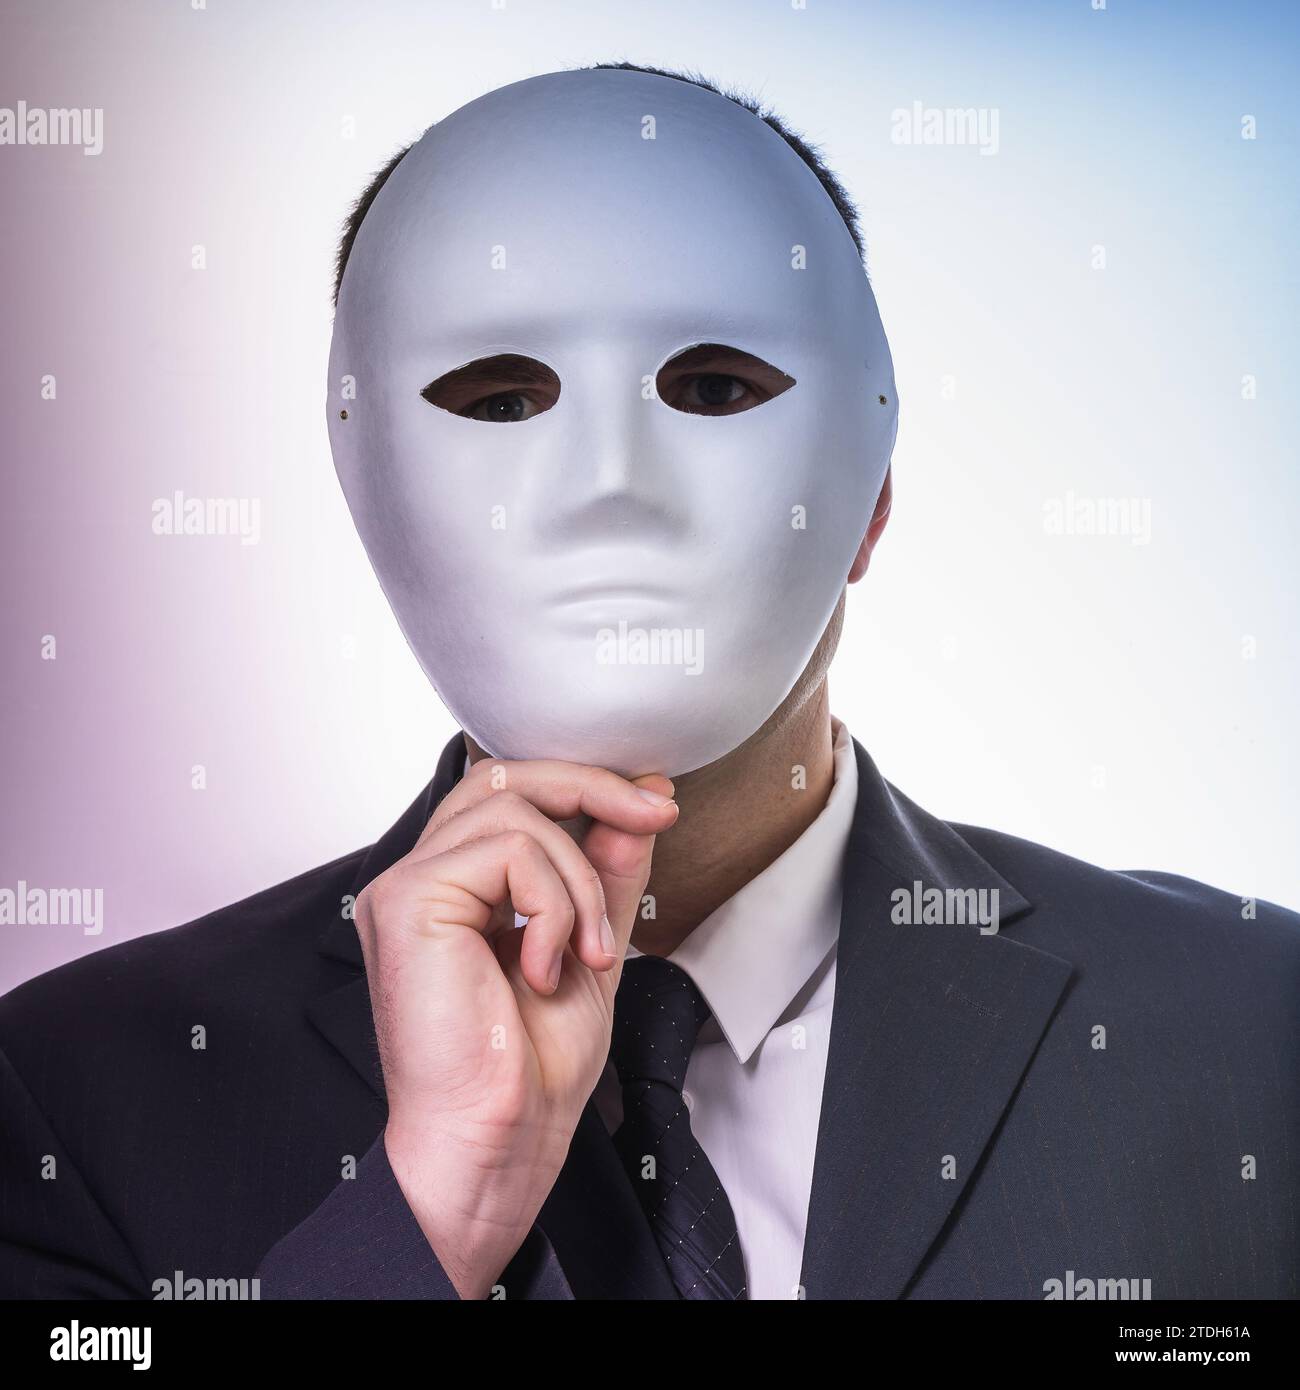 Ein Mann versteckt sein Gesicht mit einer Maske, ein Konzept zum Thema Spionage und Identitätsgeheimnisse Stockfoto